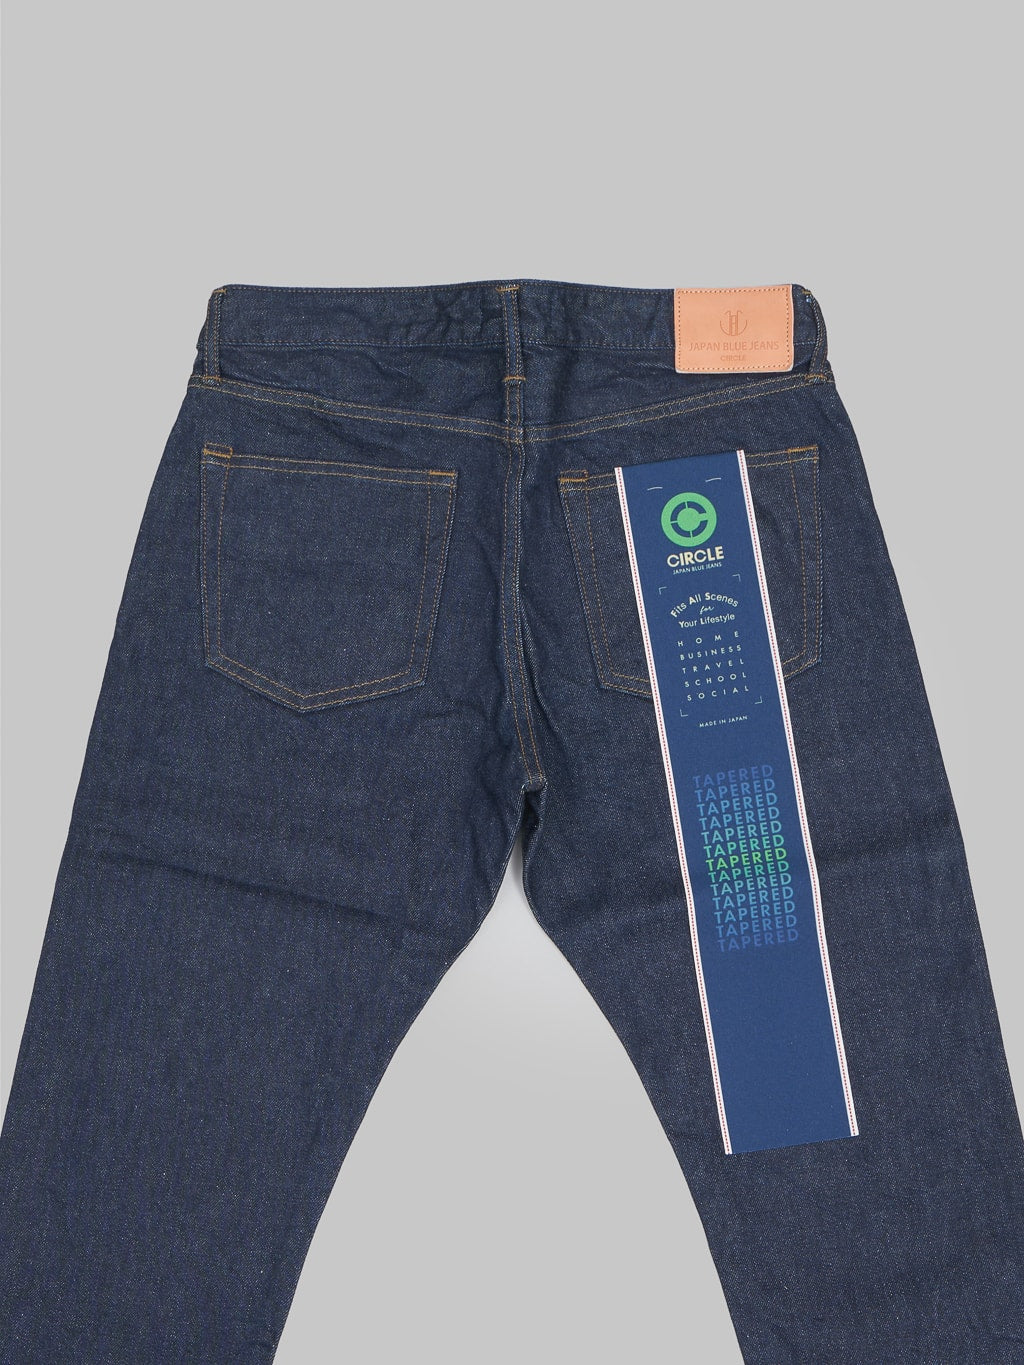 Japan Blue J205 Stretch Circle Tapered denim Jeans back details